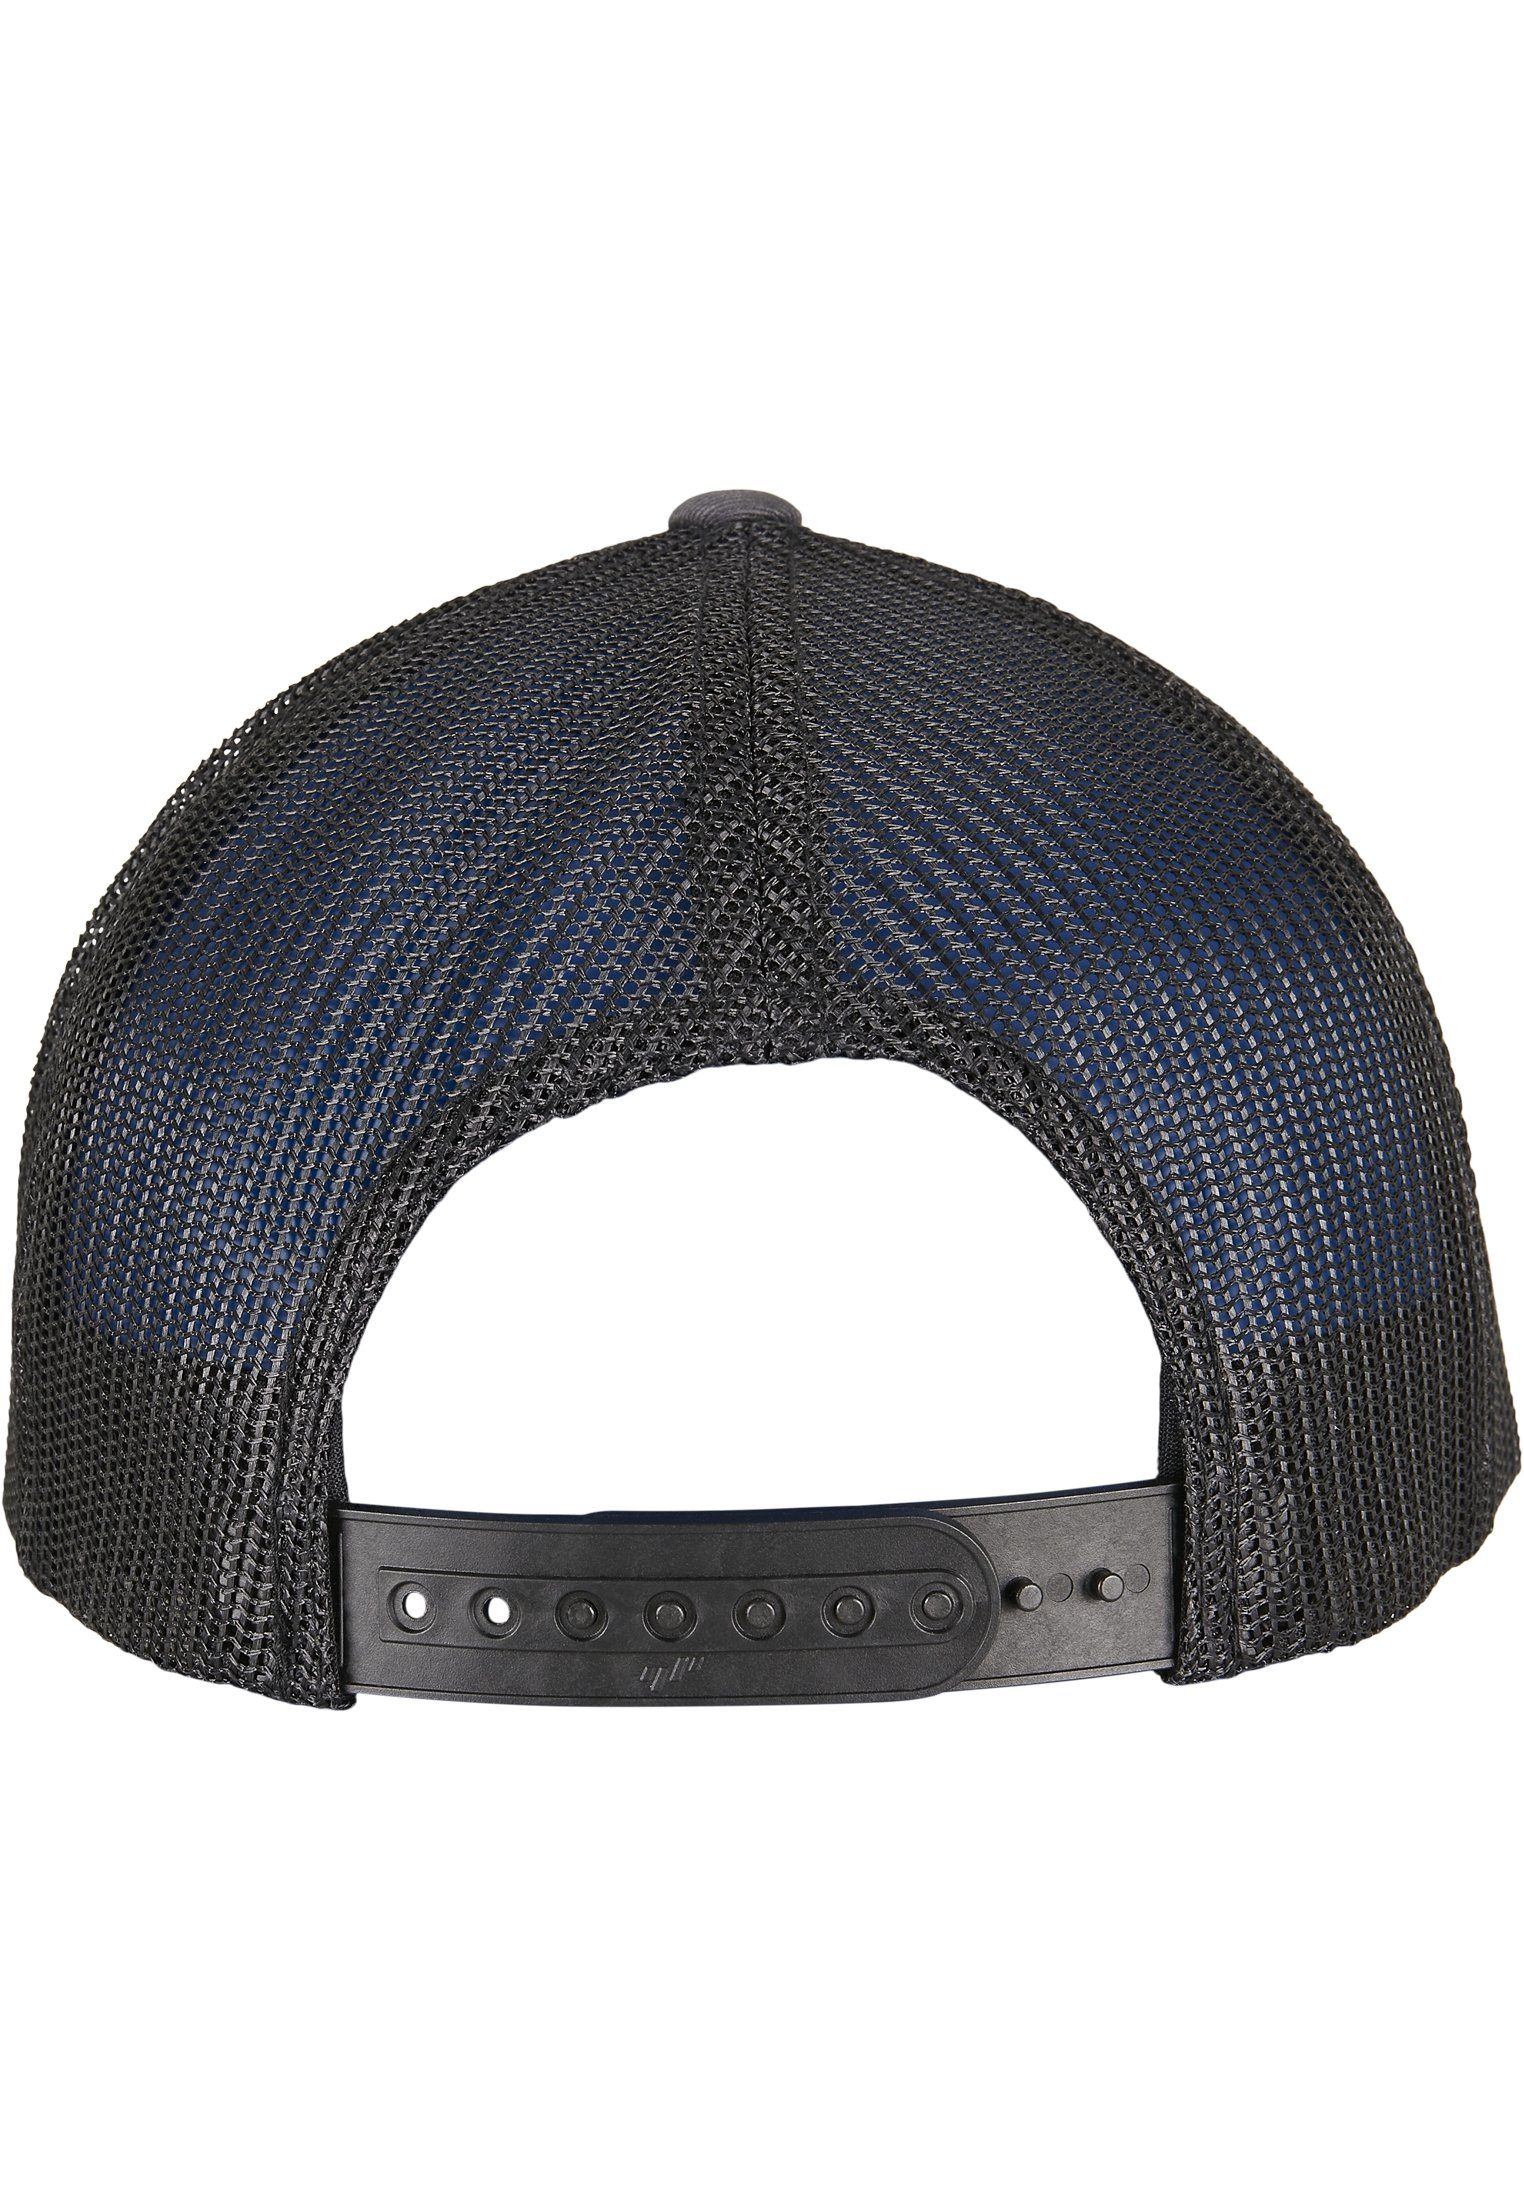 2-TONE CLASSICS Flex RECYCLED TRUCKER CAP YP RETRO Flexfit charcoal/black Caps Cap